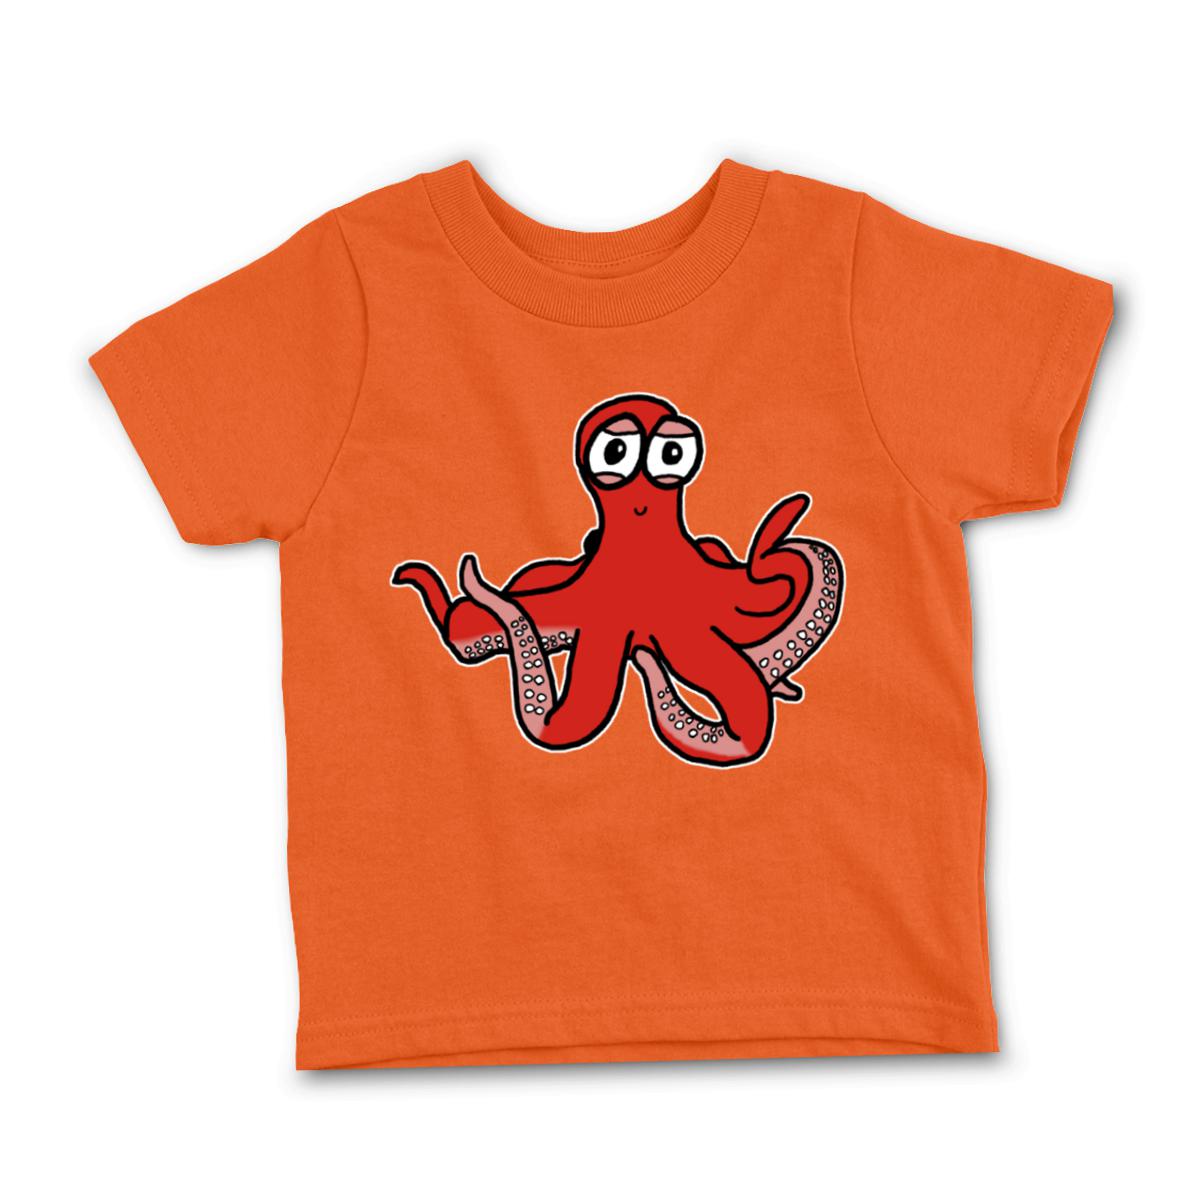 Octopus Toddler Tee 4T orange